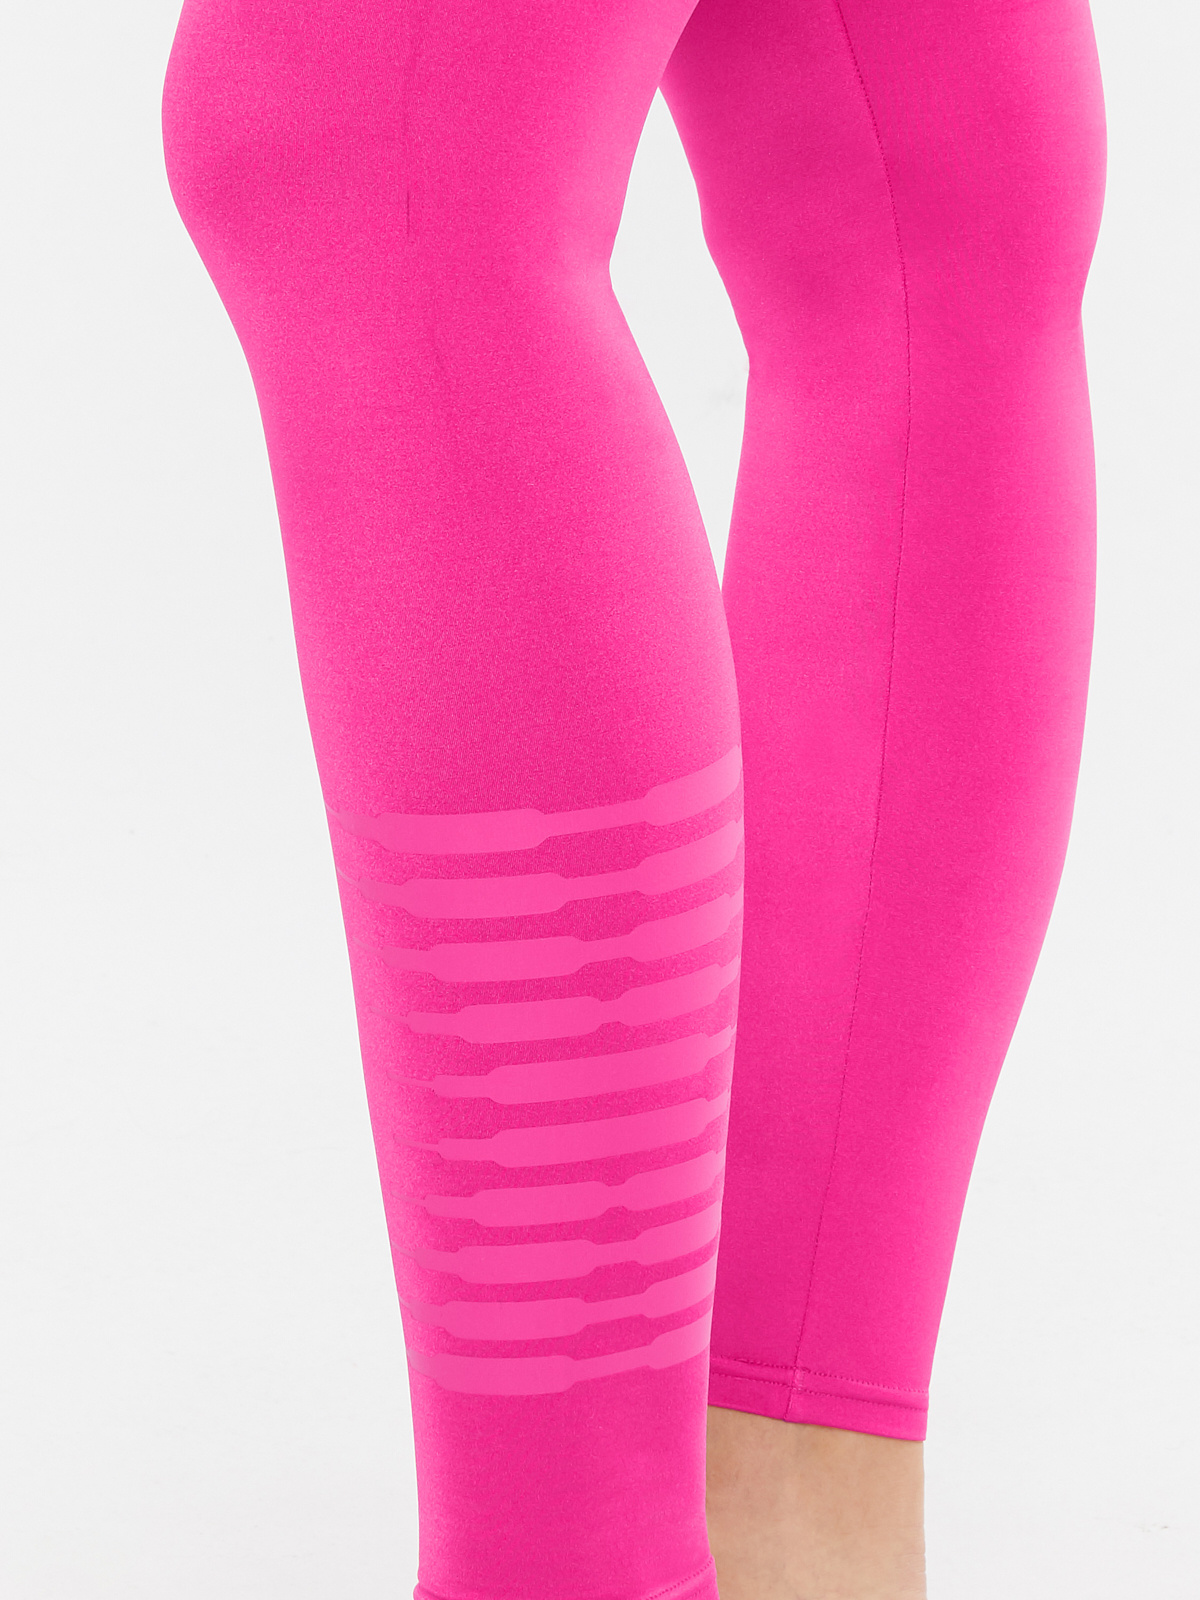 Savage Leggings - Pink Leisurewear